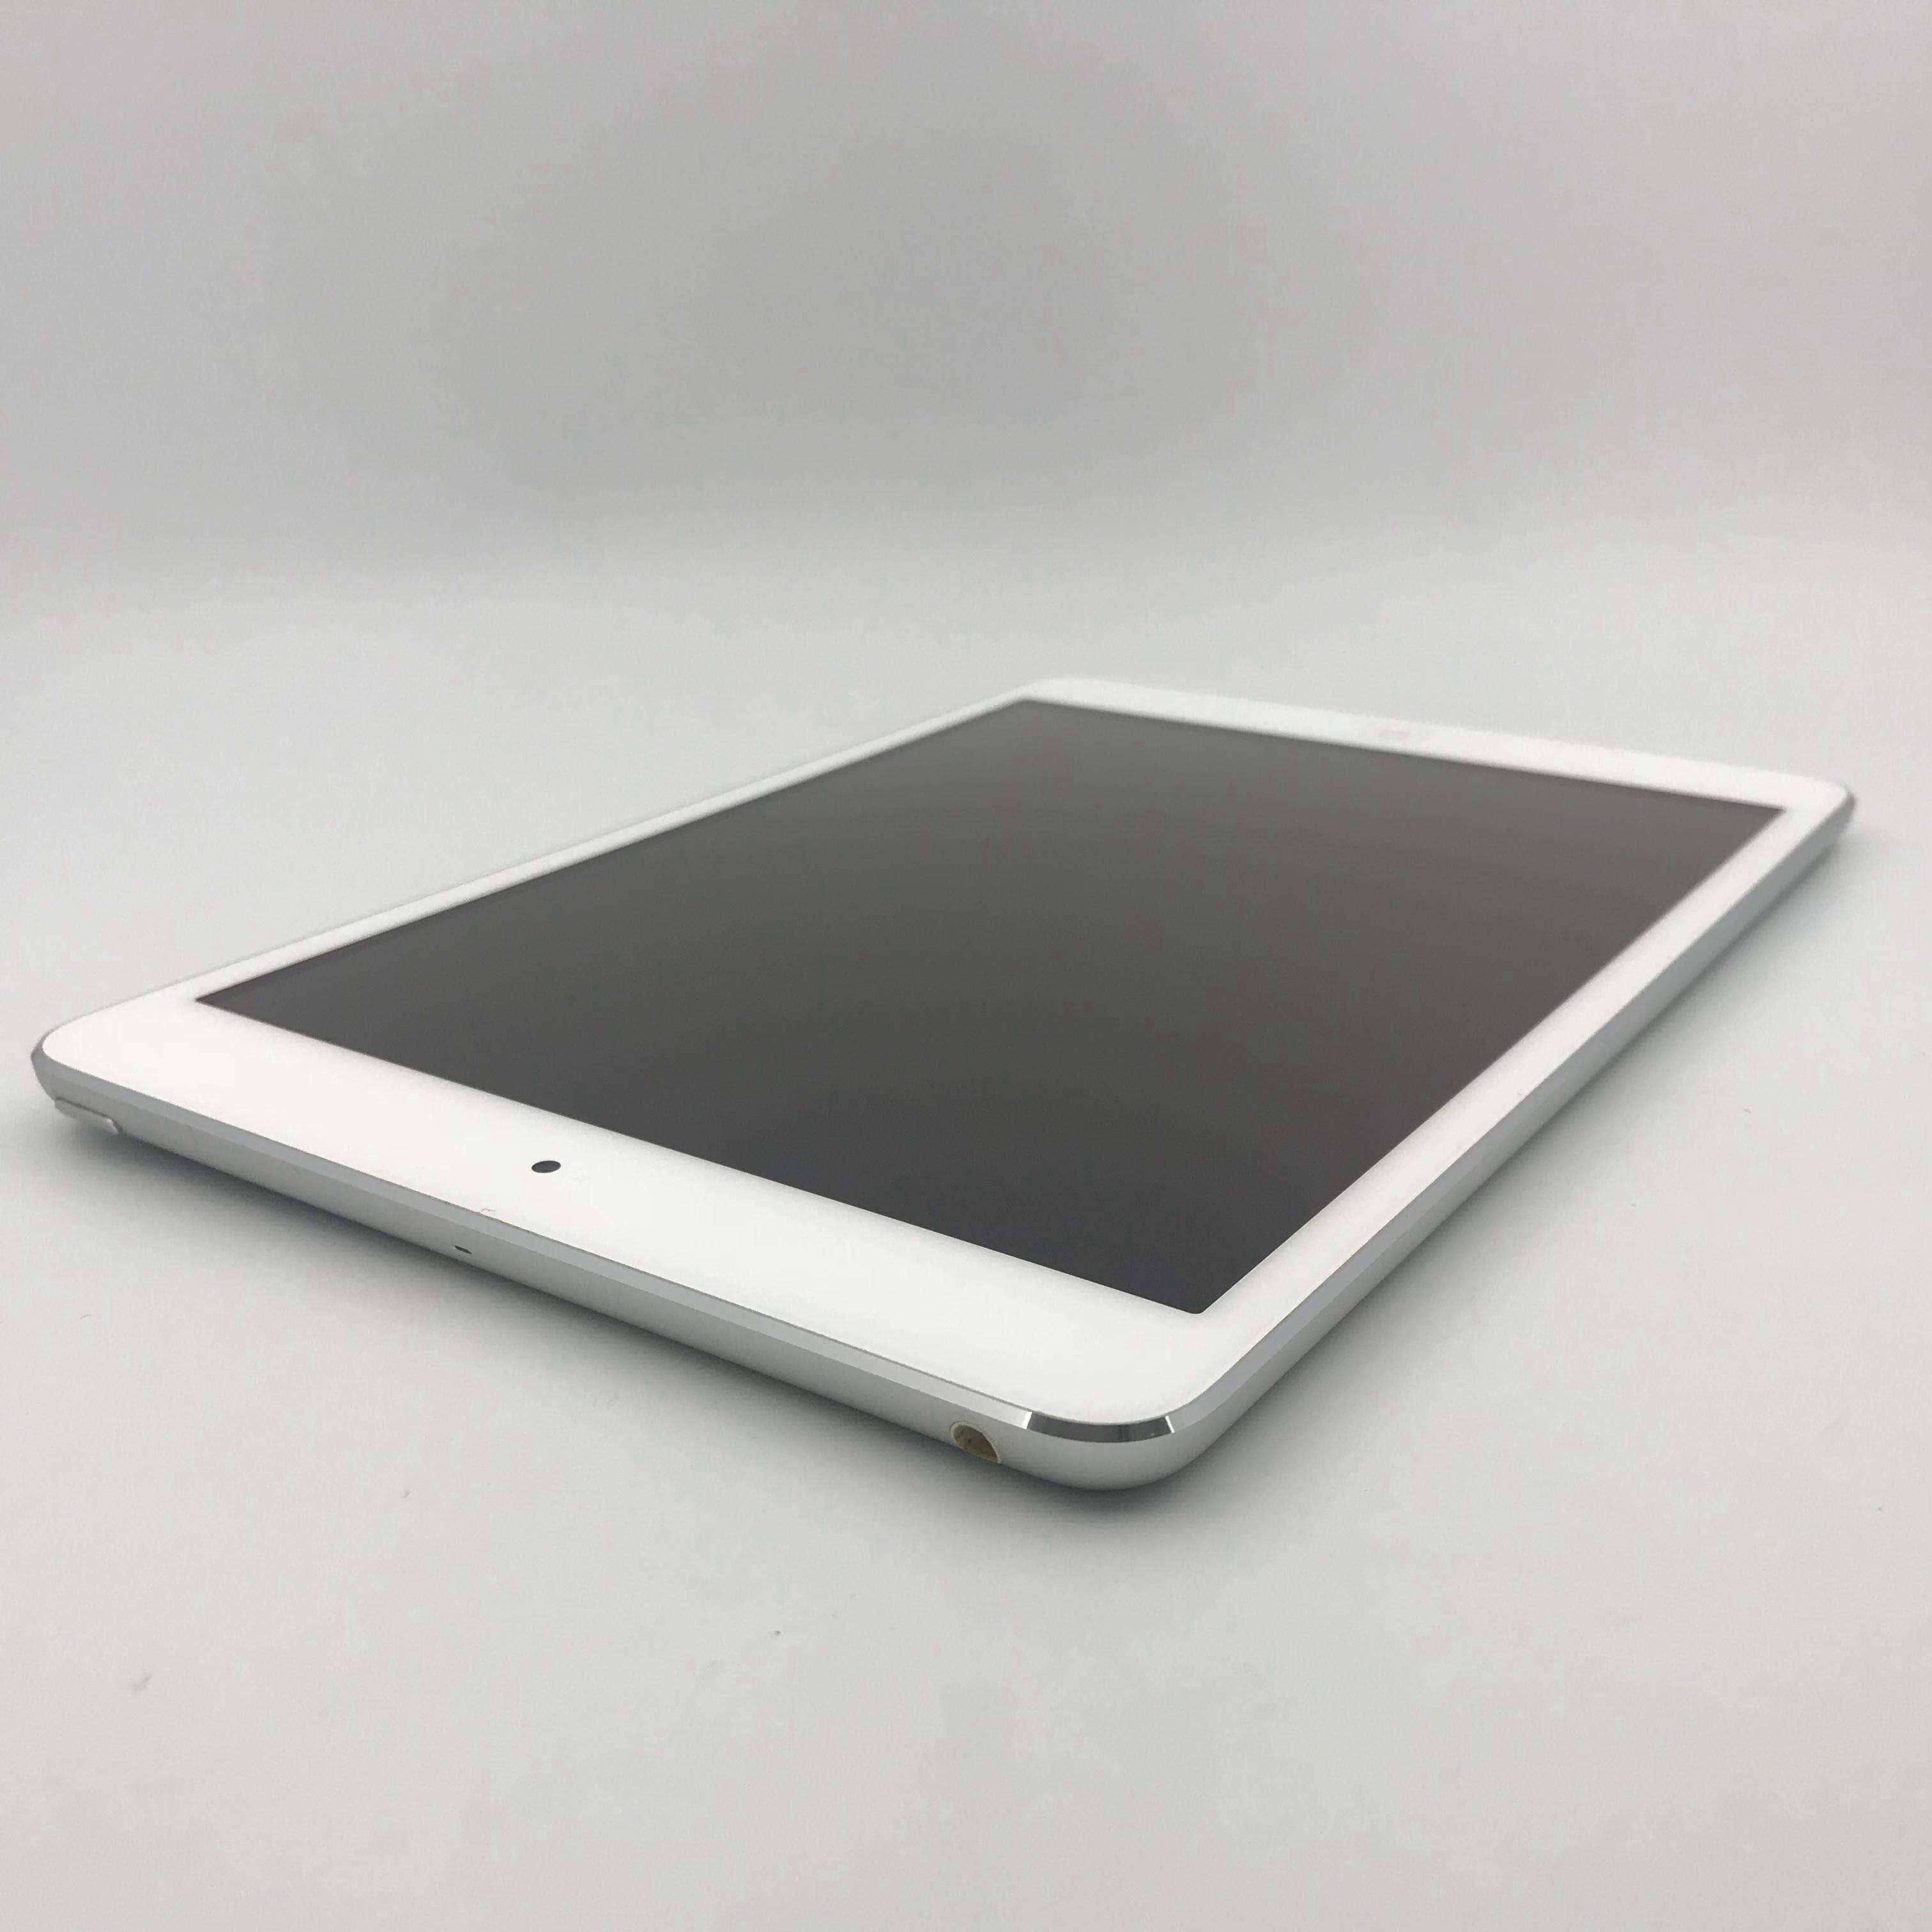 iPad mini 2 16G 港行WIFI版 - 二手iPad mini2 (2013)7.9英寸 - 爱否商城(www.aifou.cn)